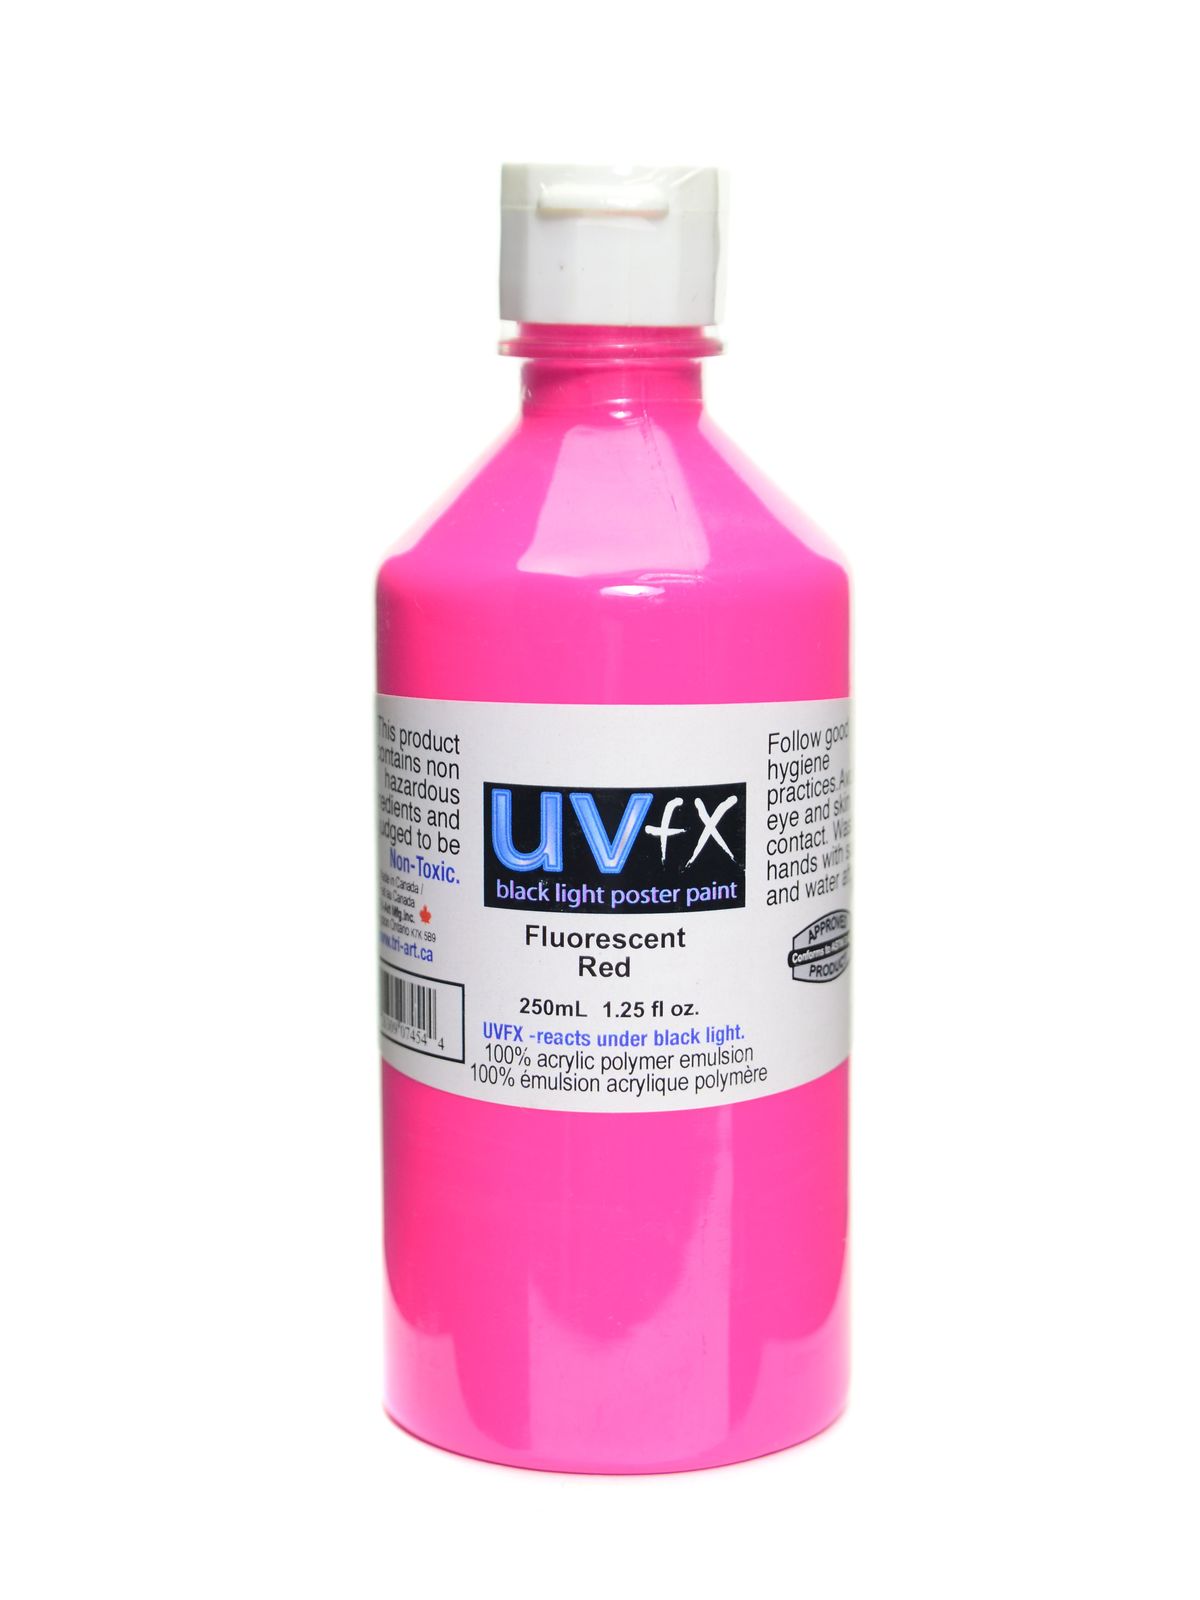 Uvfx Black Light Poster Paint Fluorescent Red 250 Ml Bottle